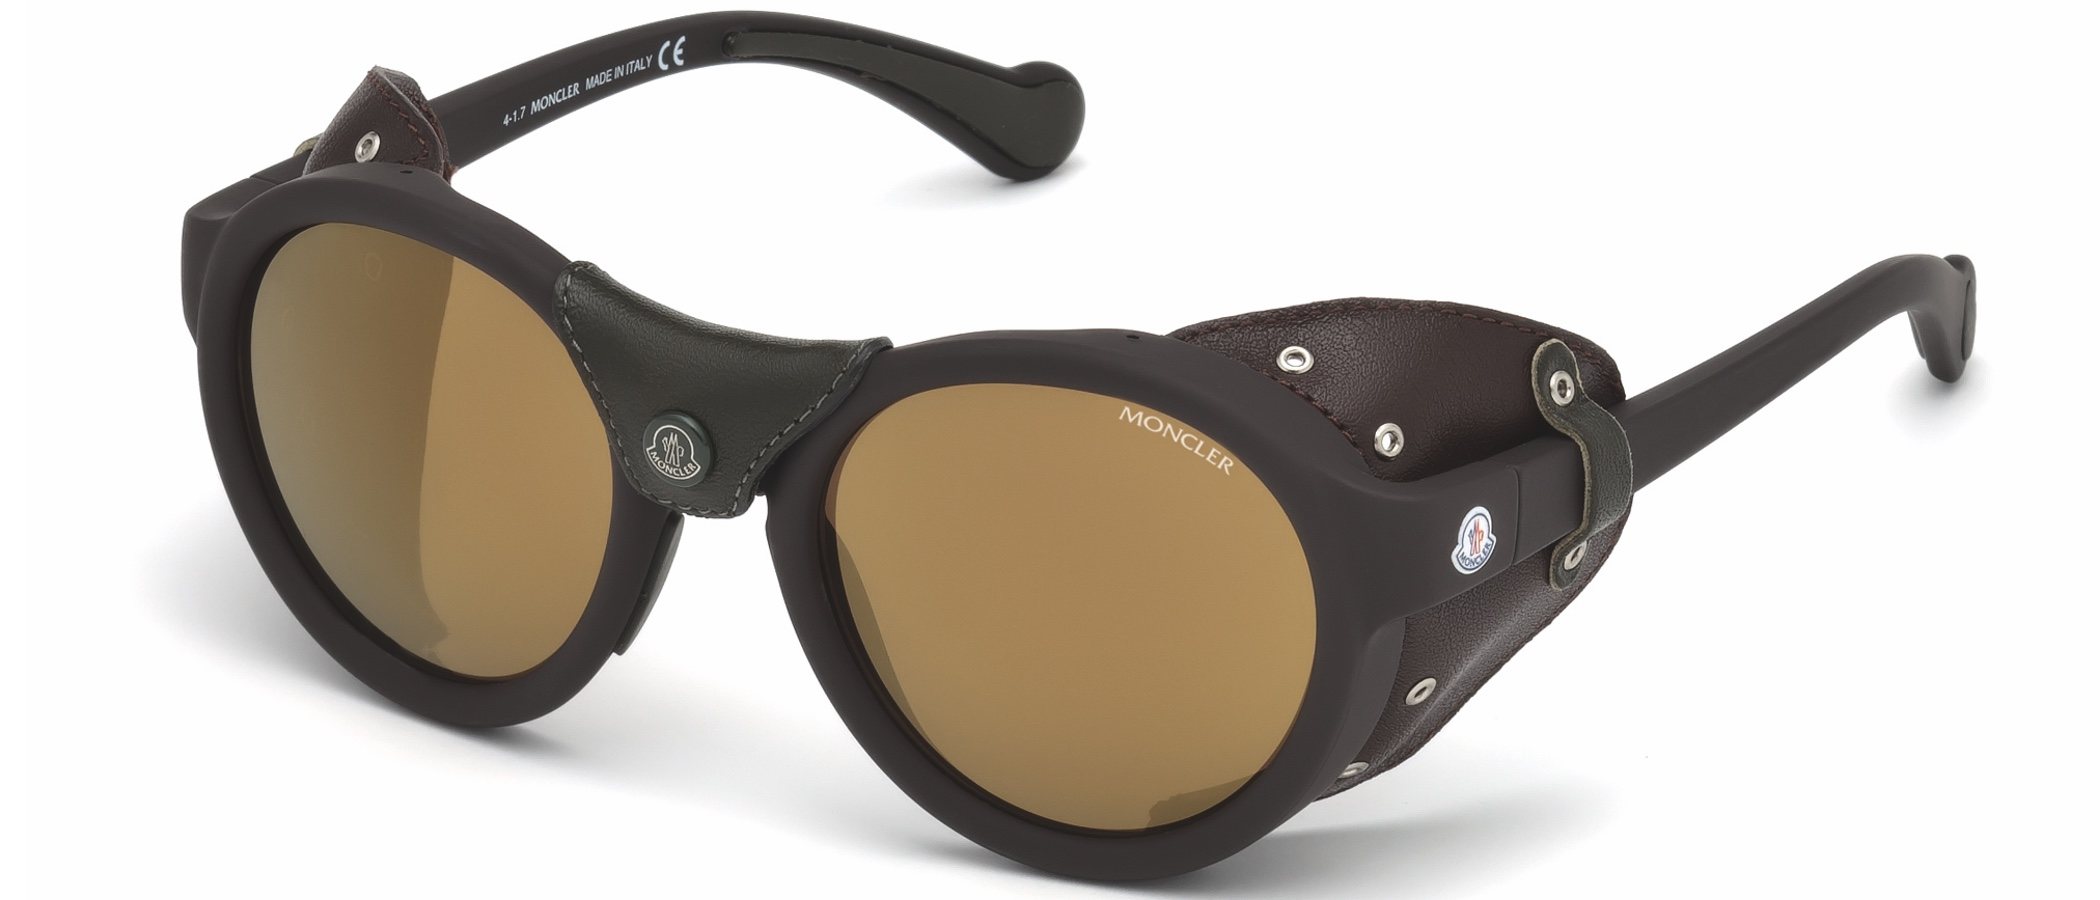 Moncler presenta la nueva colección primavera/verano 2018 de gafas de sol